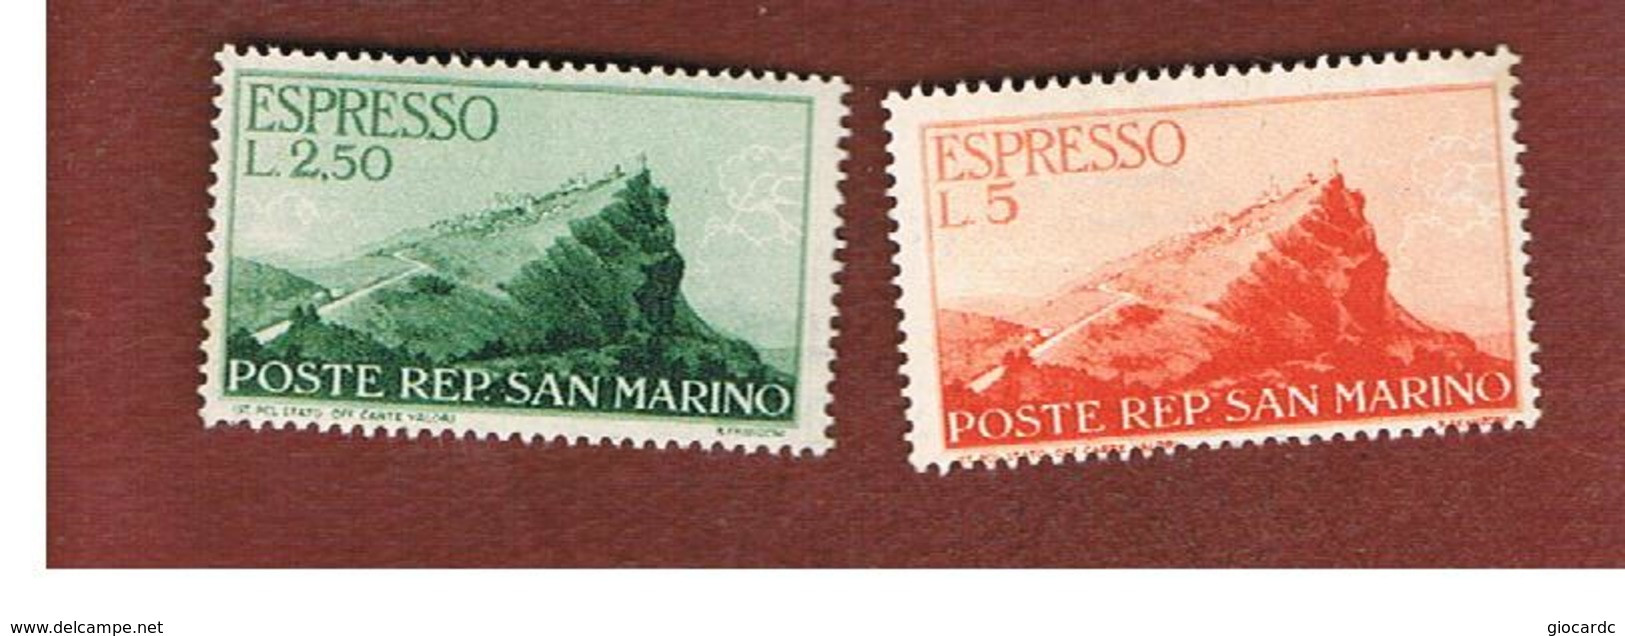 SAN MARINO - UNIF. E11.E12 ESPRESSO - 1945  VEDUTA (SERIE COMPLETA DI 2) -  MINT** - Express Letter Stamps